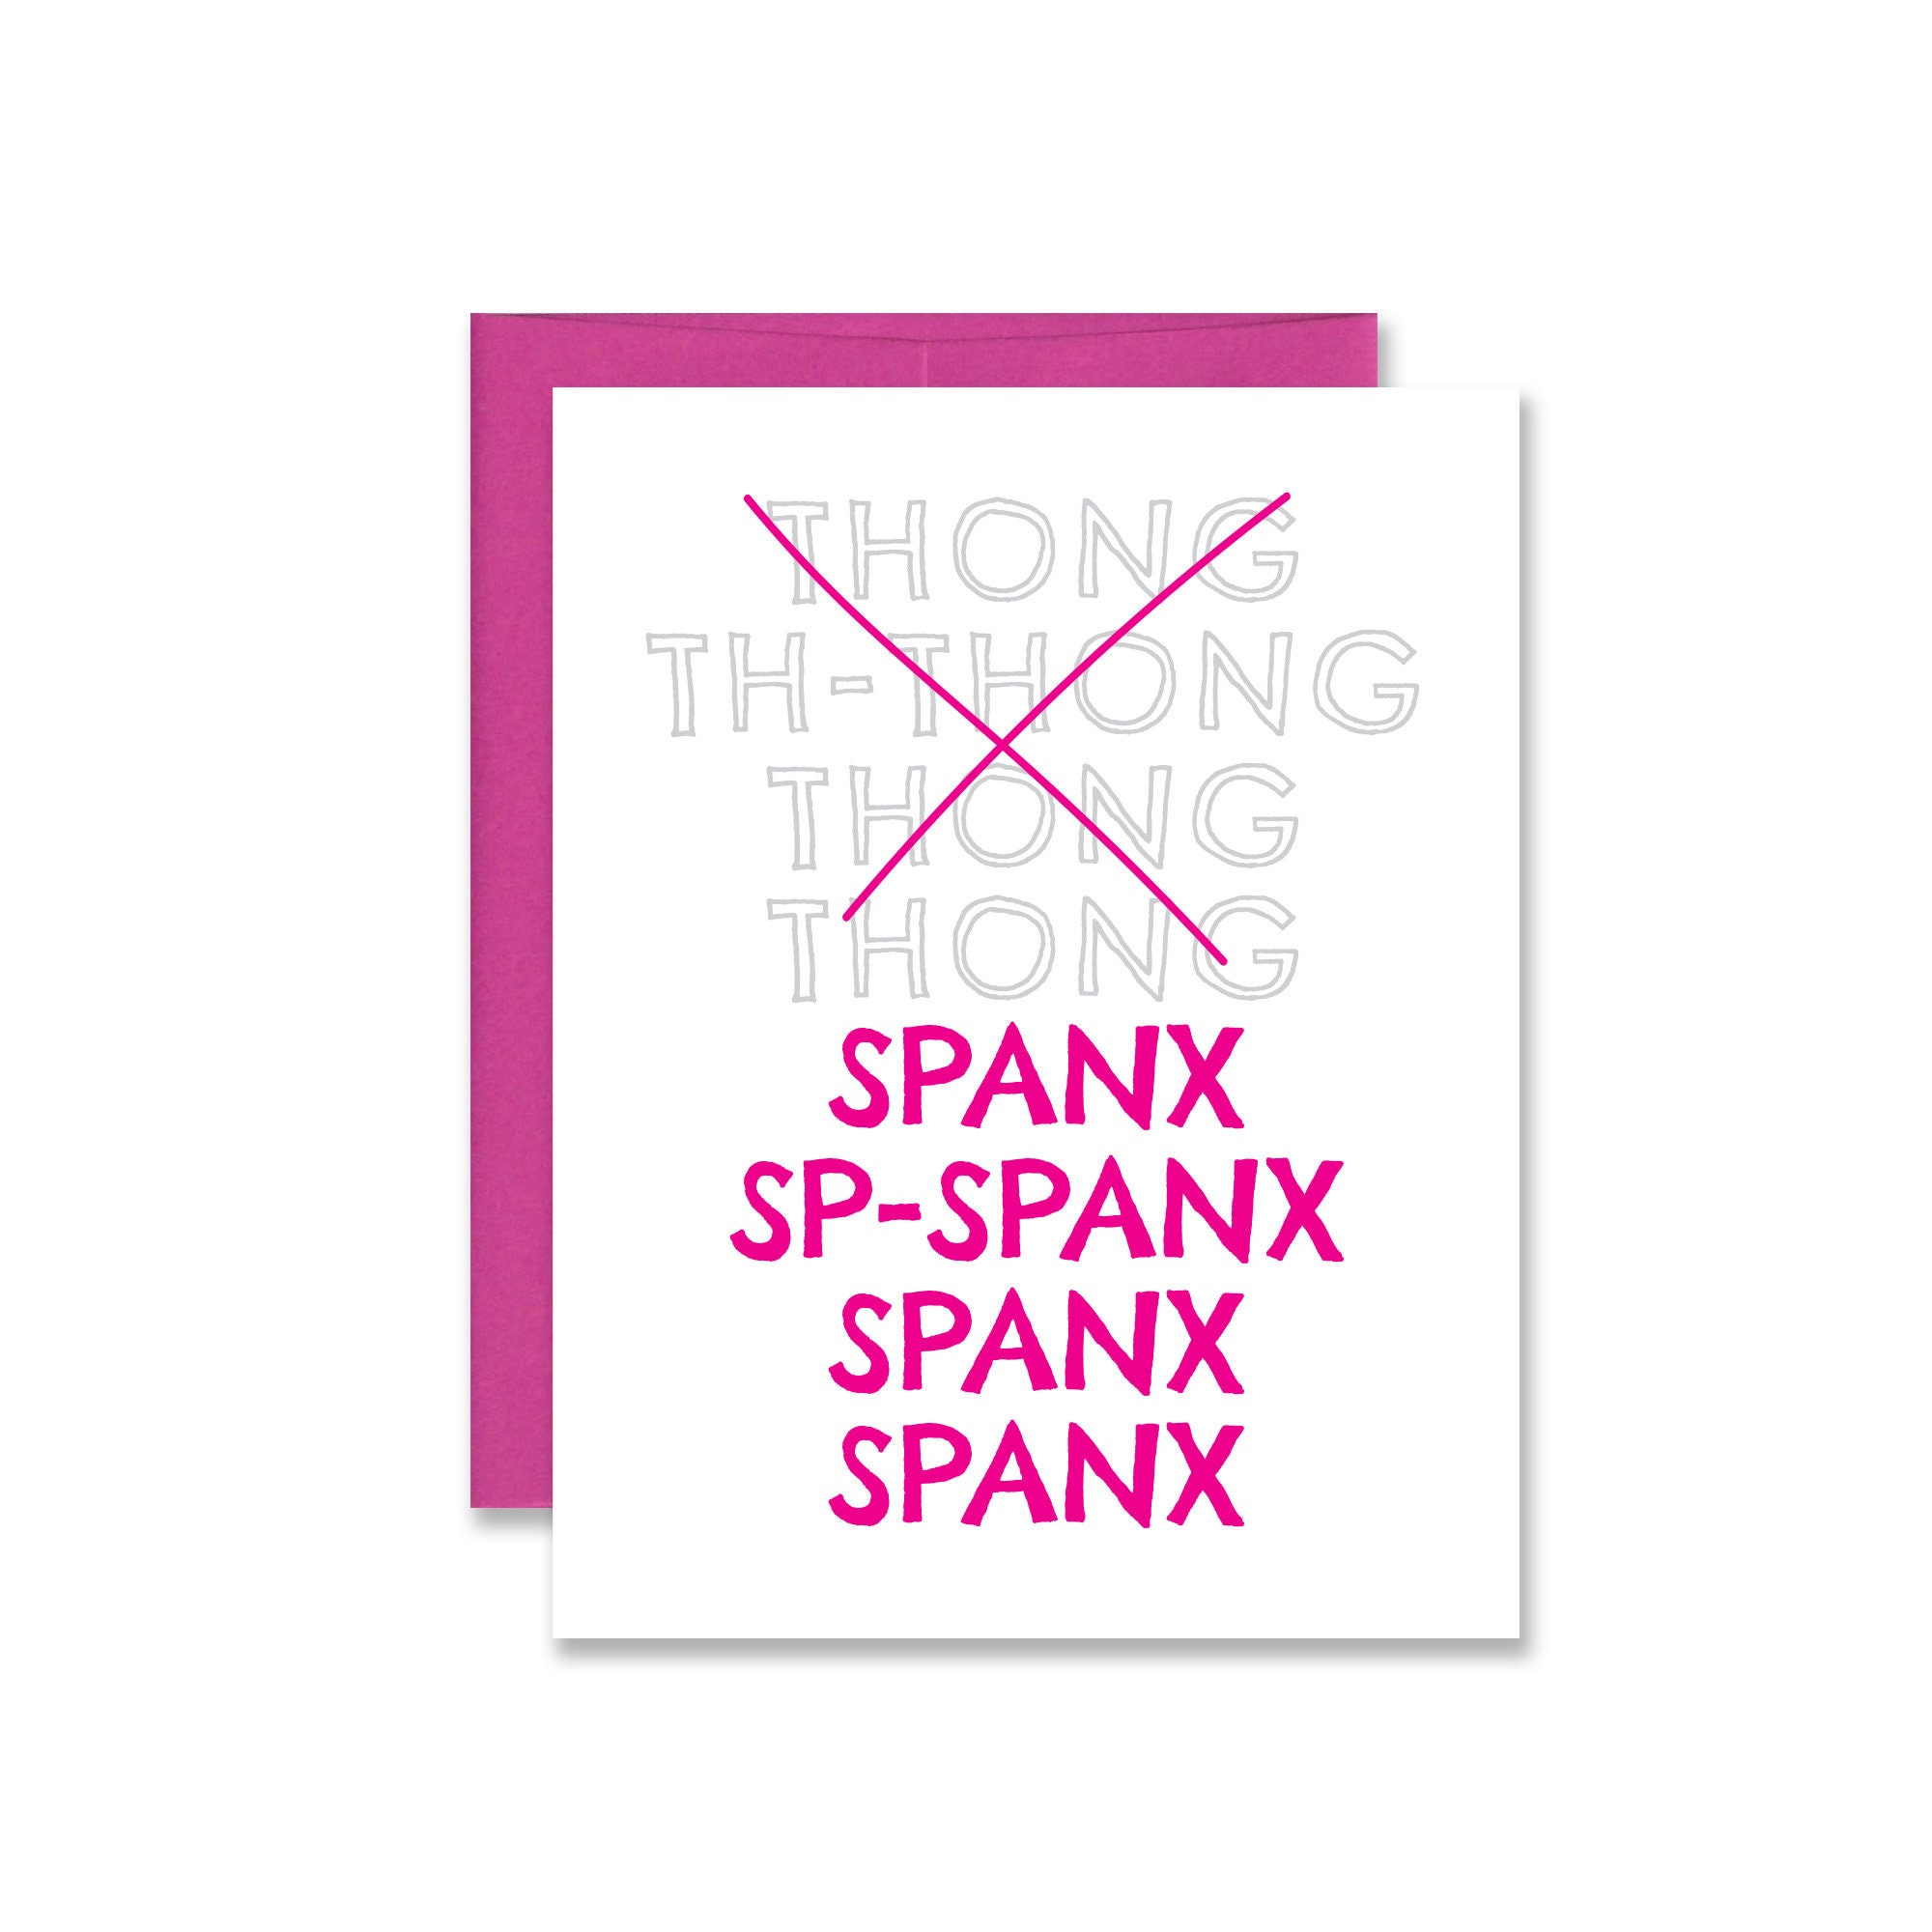 Funny Thong Song Spanx Card Xennial / Millennial Friendship Card